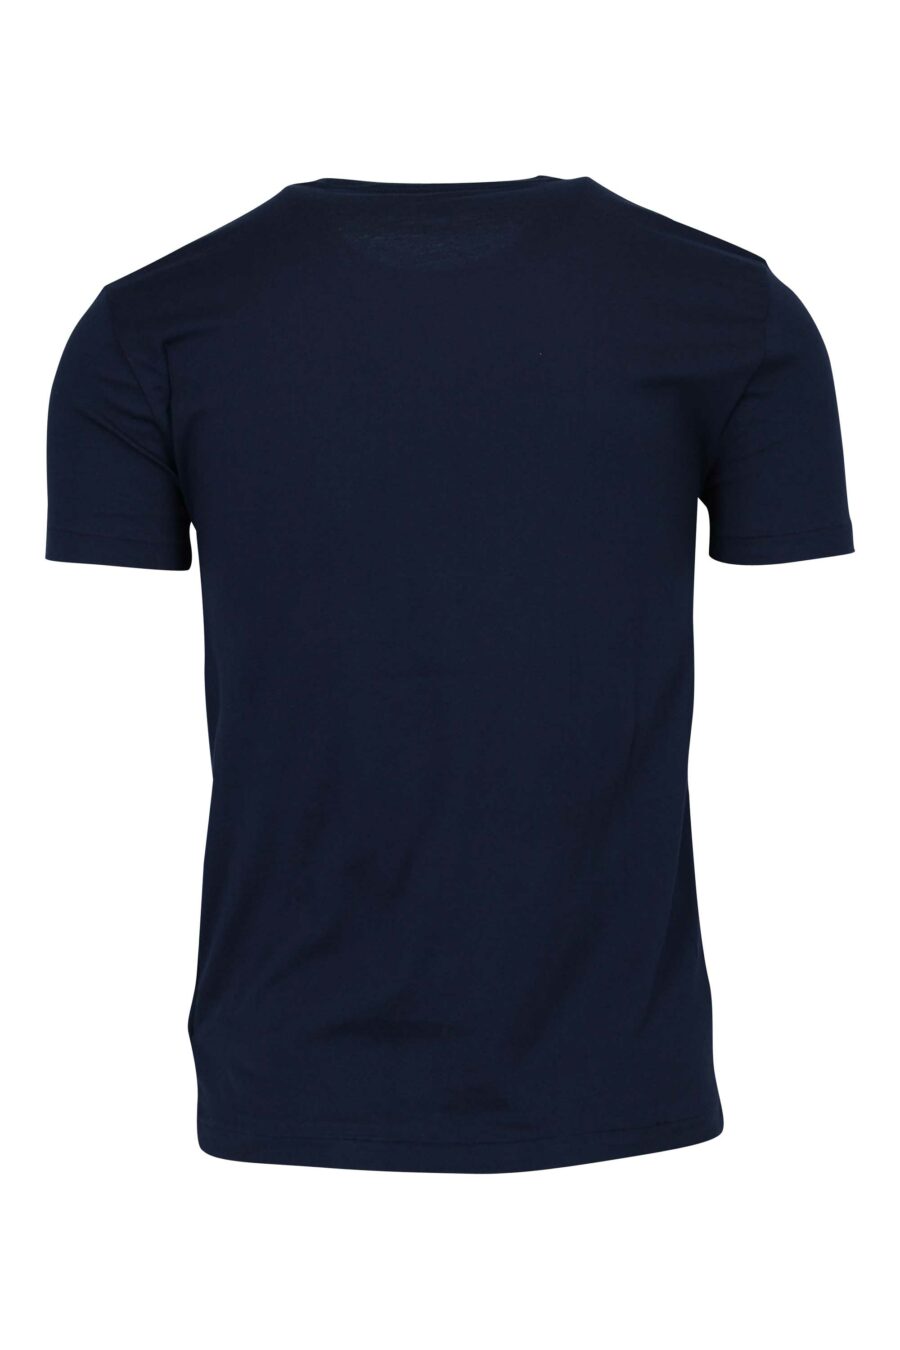 Camiseta azul oscuro con minilogo "polo" - 5045018254835 1